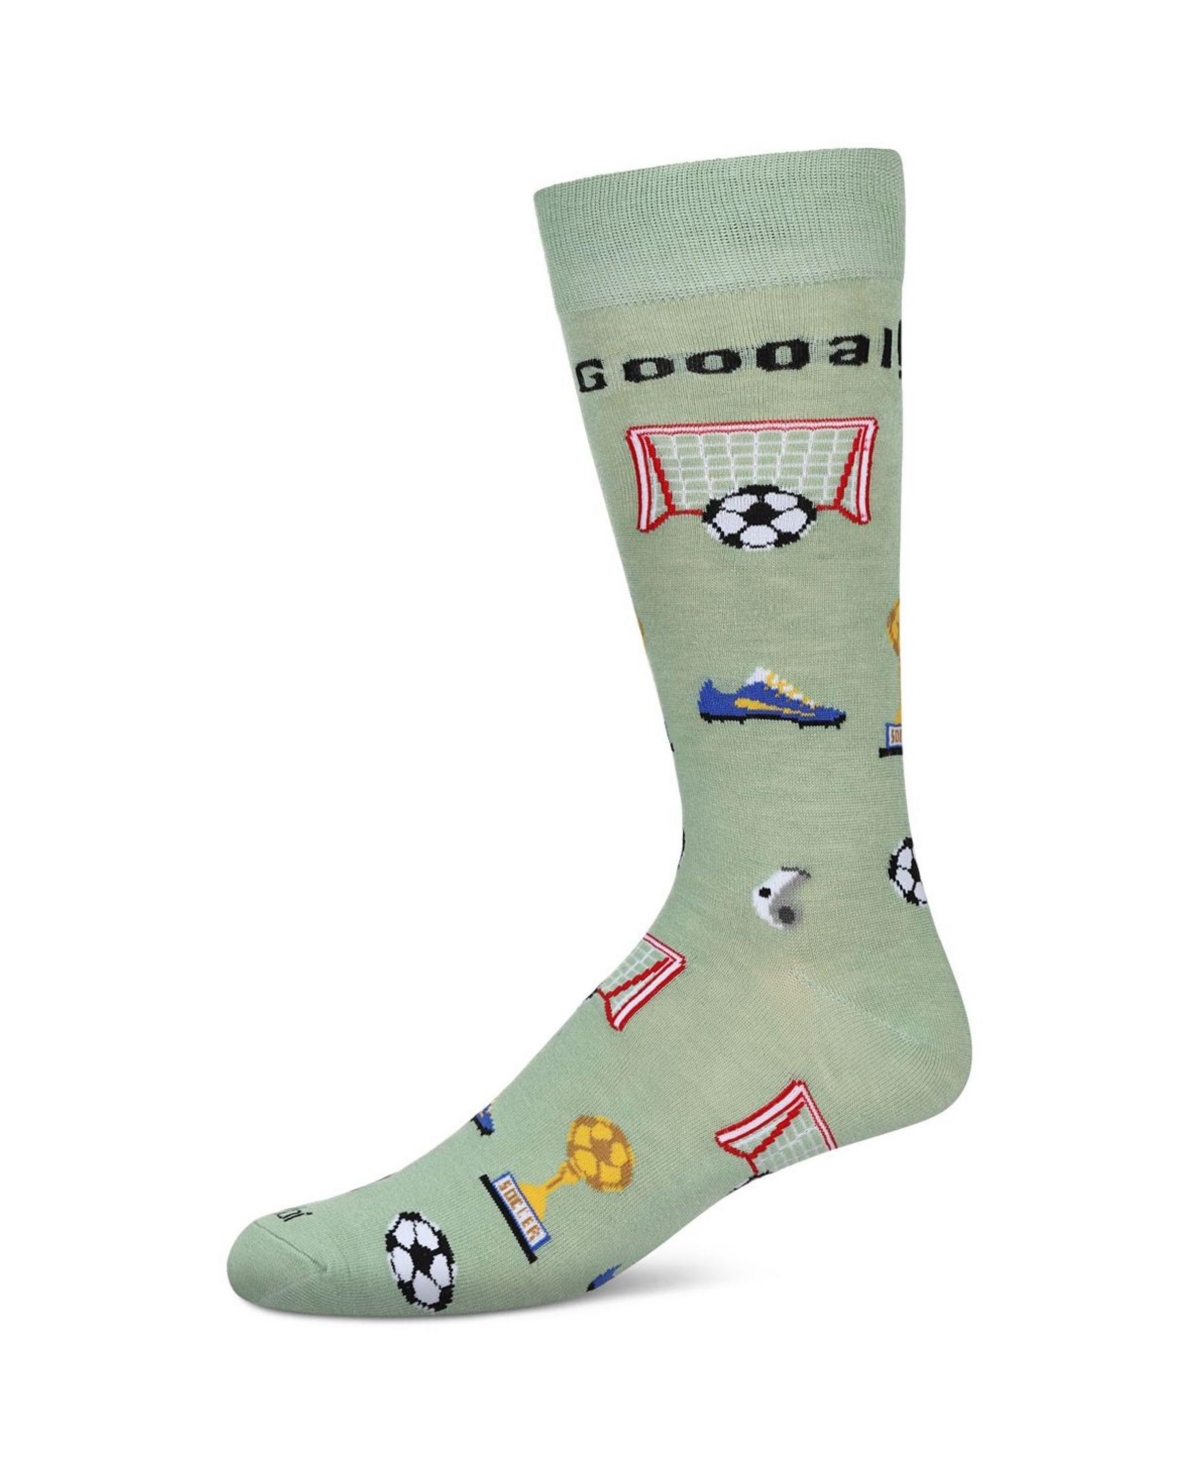 Men's Soccer Novelty Crew Socks - Moss